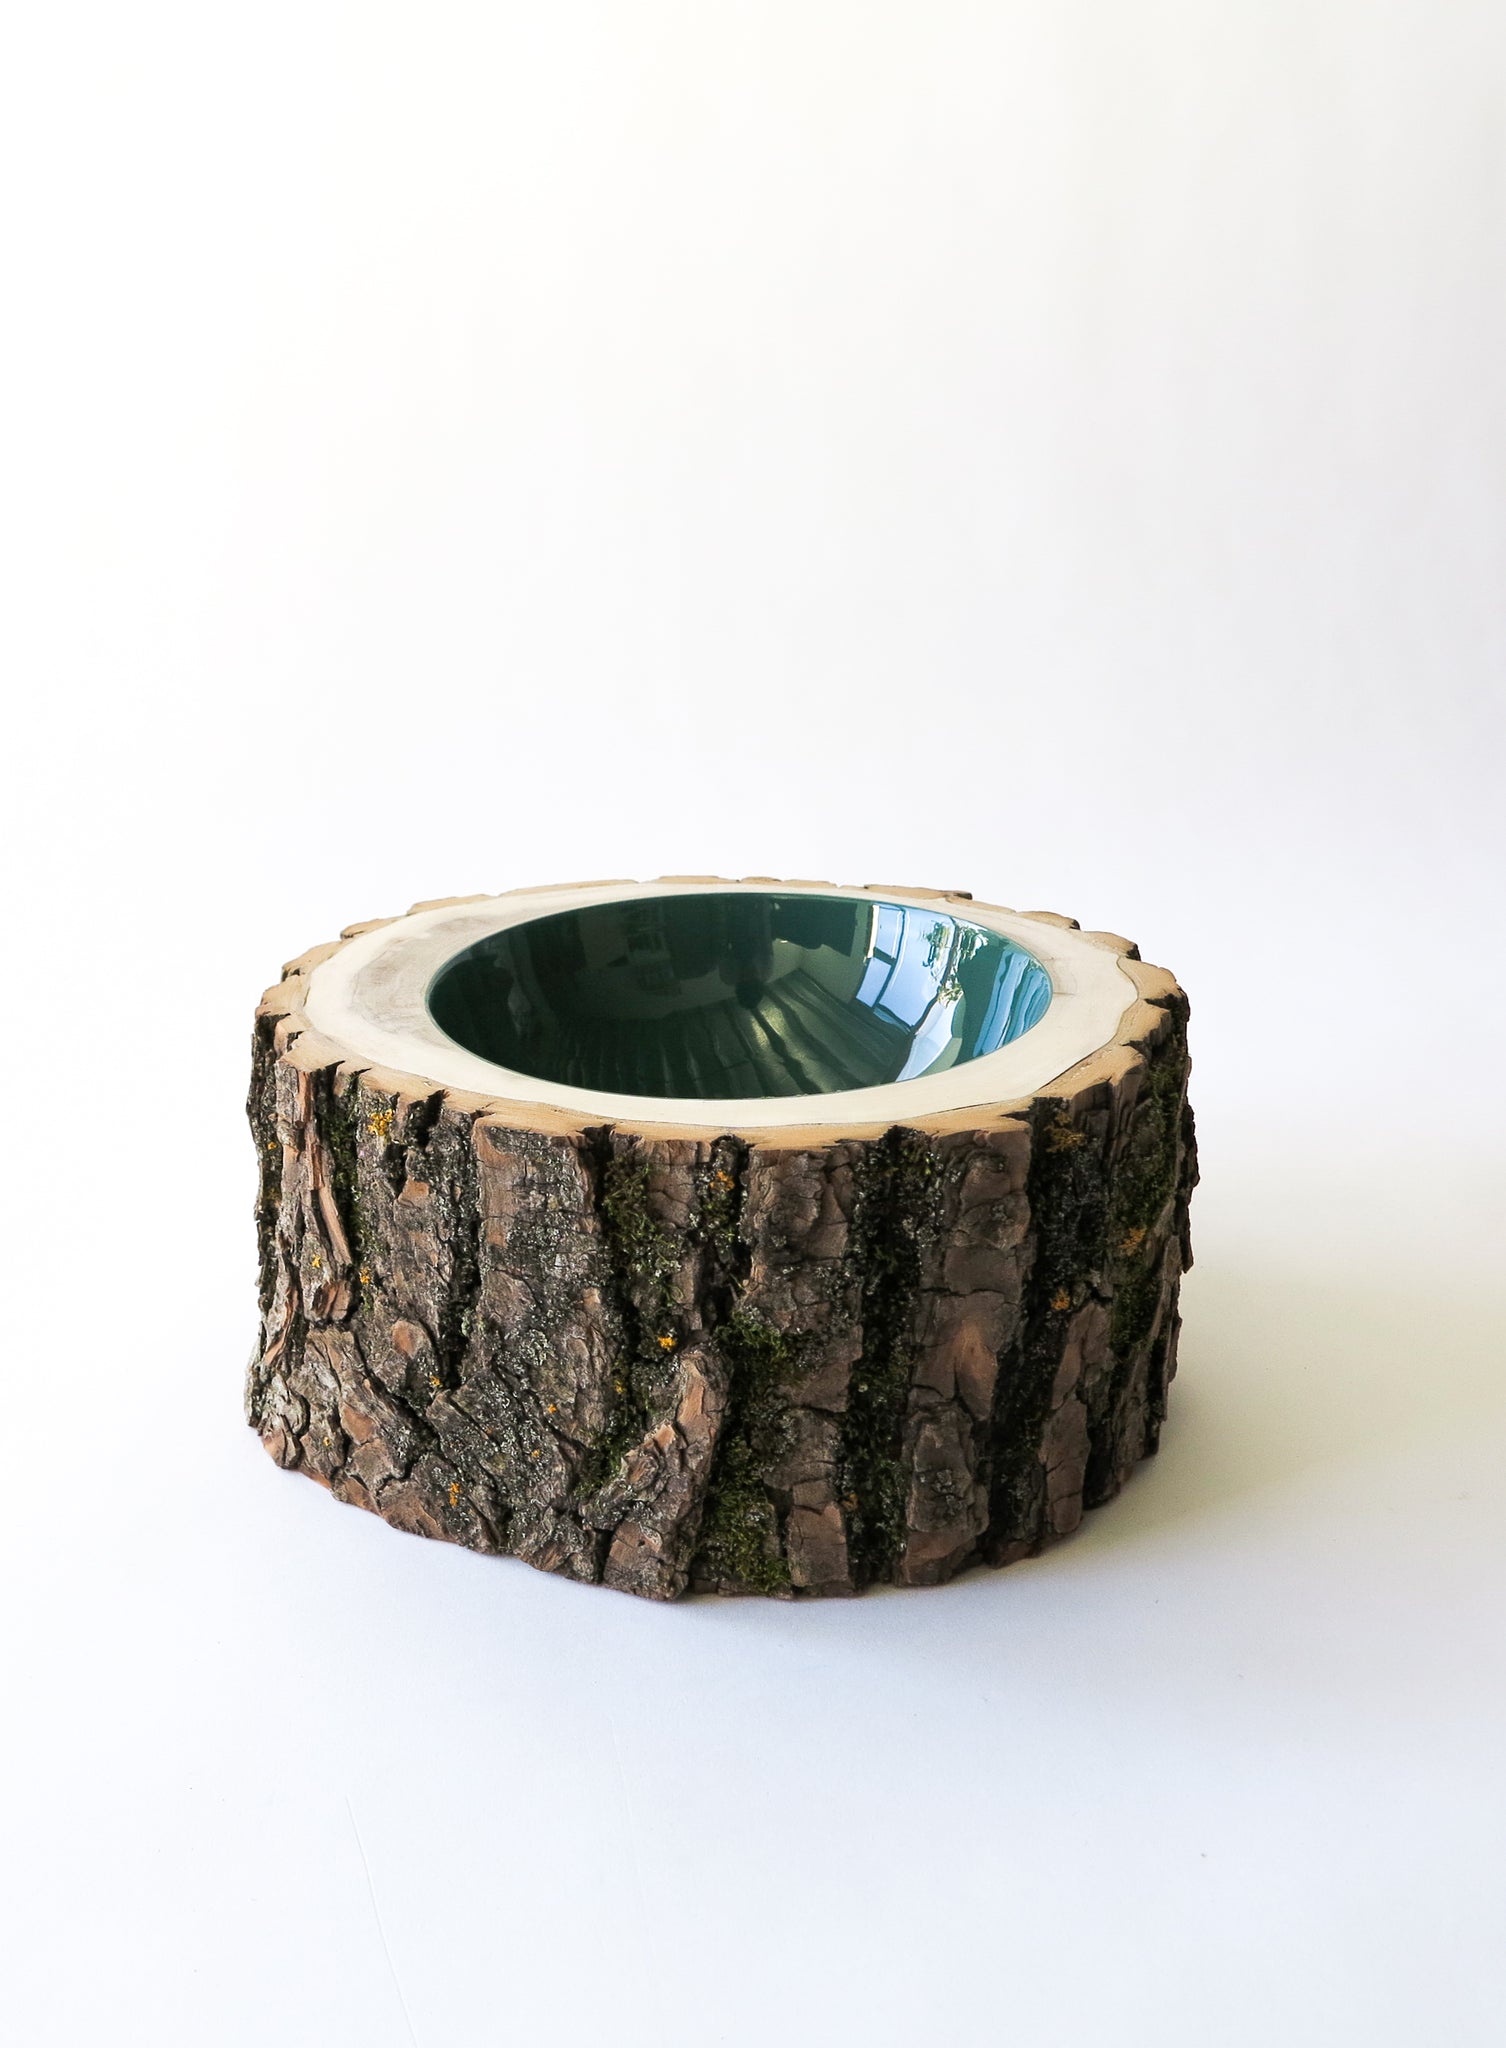 Log Bowl | Size 8 | Fir